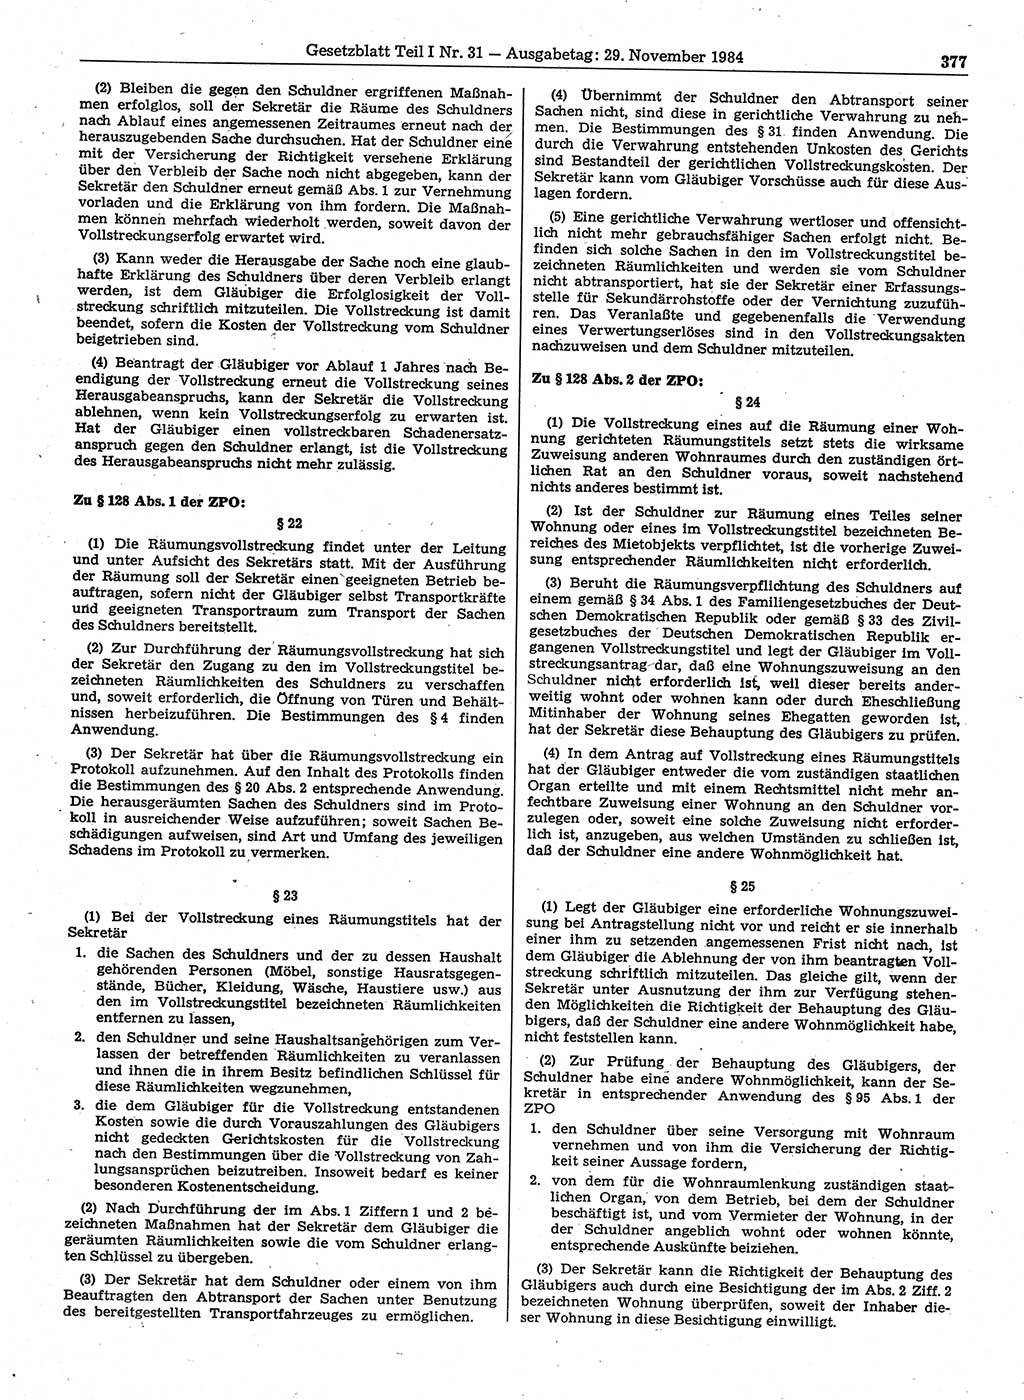 Gesetzblatt (GBl.) der Deutschen Demokratischen Republik (DDR) Teil Ⅰ 1984, Seite 377 (GBl. DDR Ⅰ 1984, S. 377)